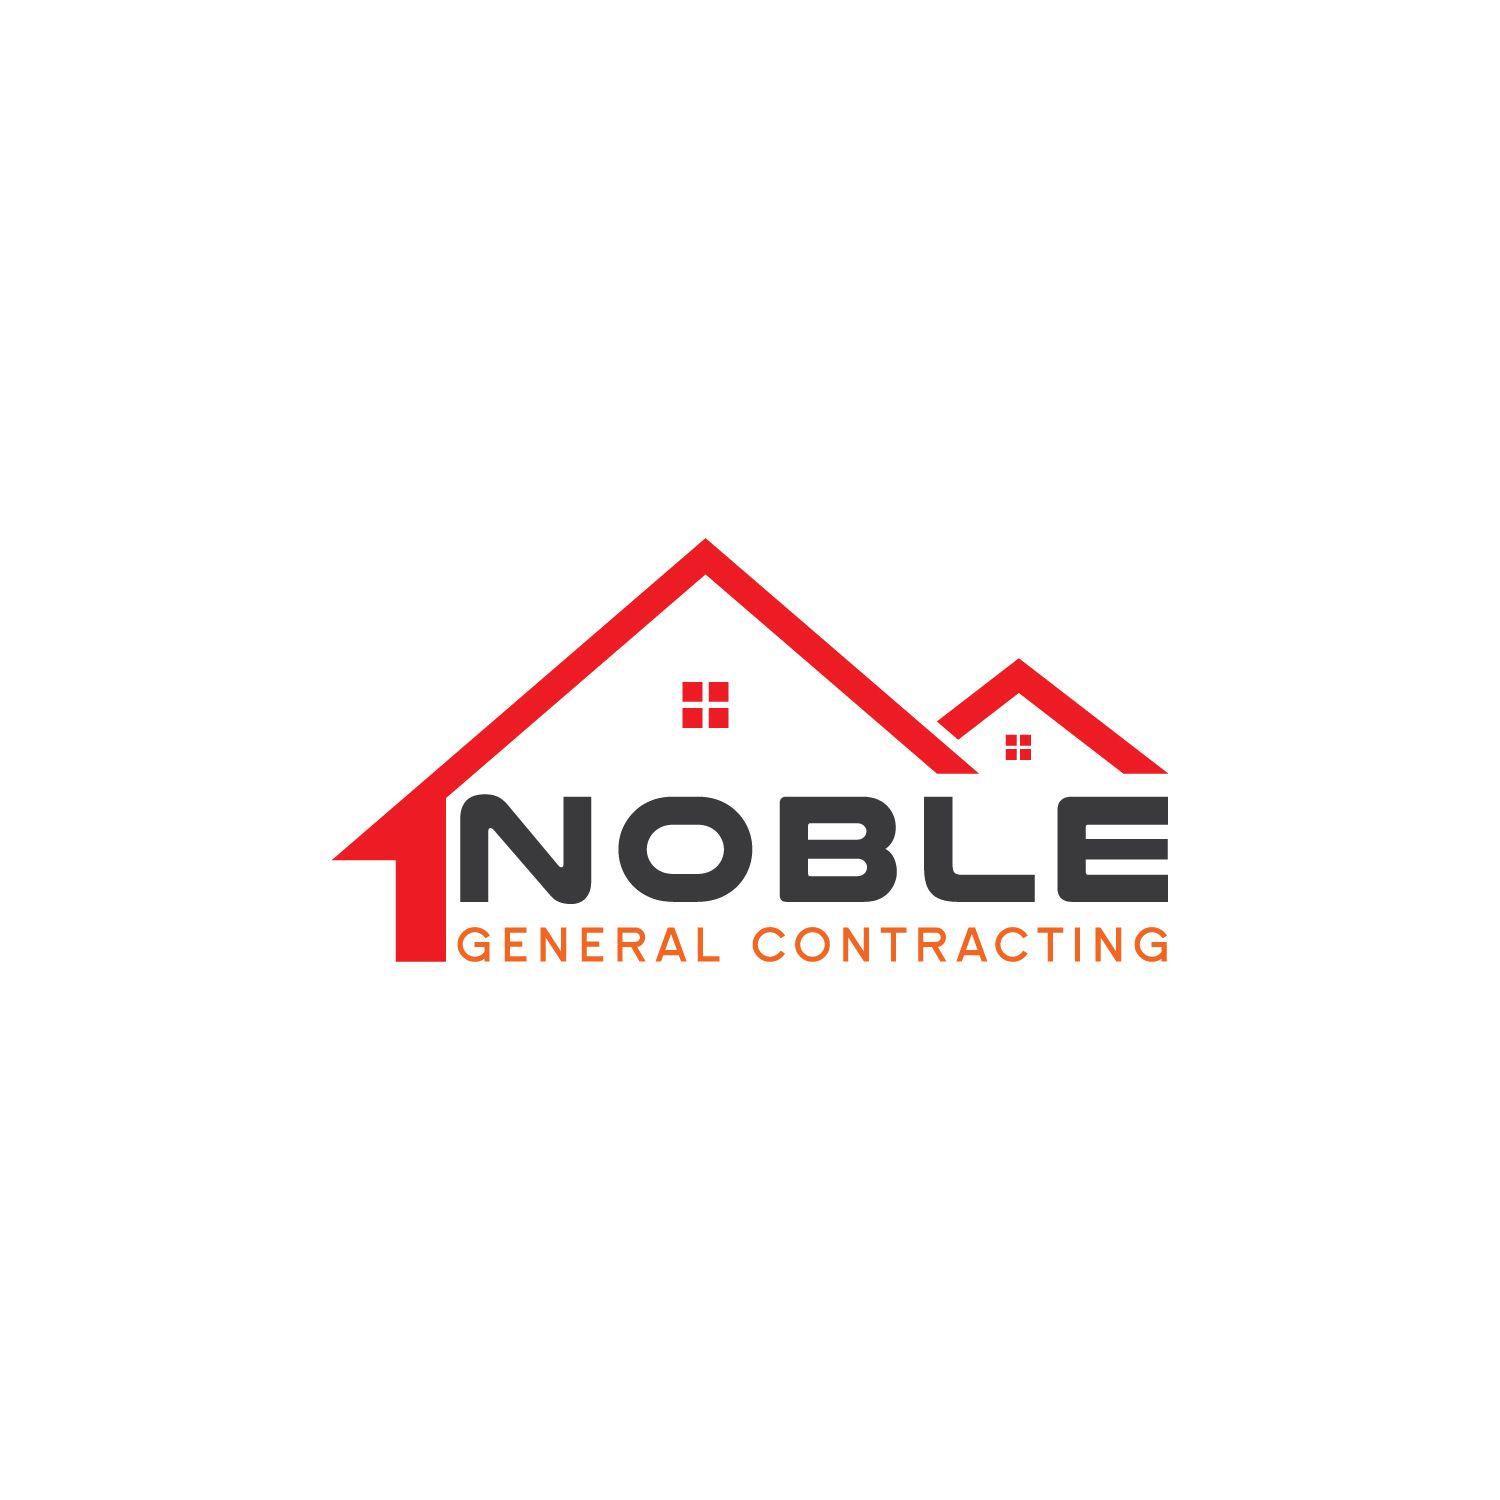 General Construction Company Logo - Bold, Masculine, Construction Company Logo Design for Noble General ...